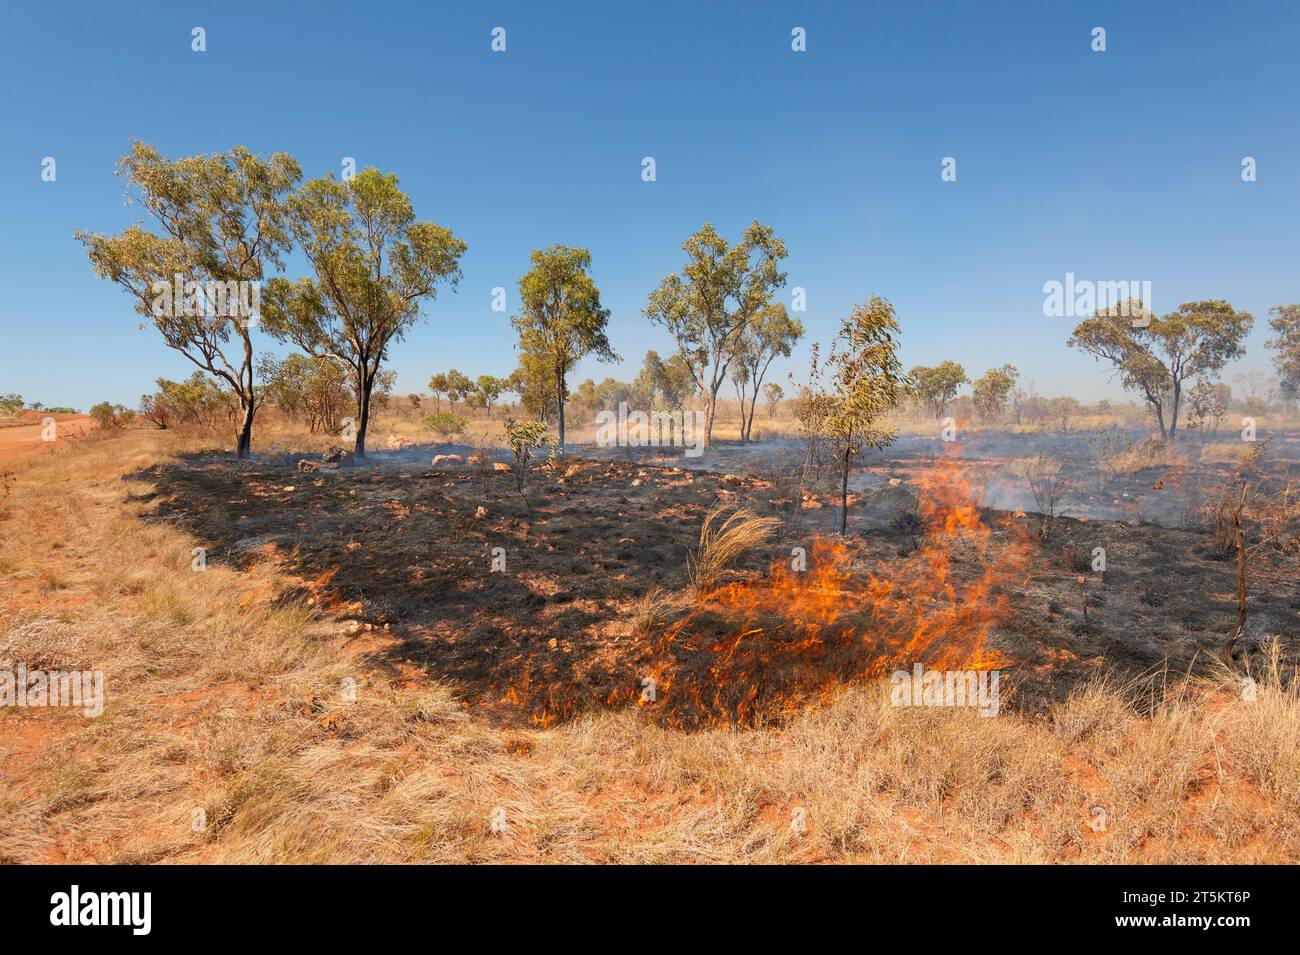 Bushfire along the Tanami Road, Kimberley Region, Western Australia, Australia Stock Photo